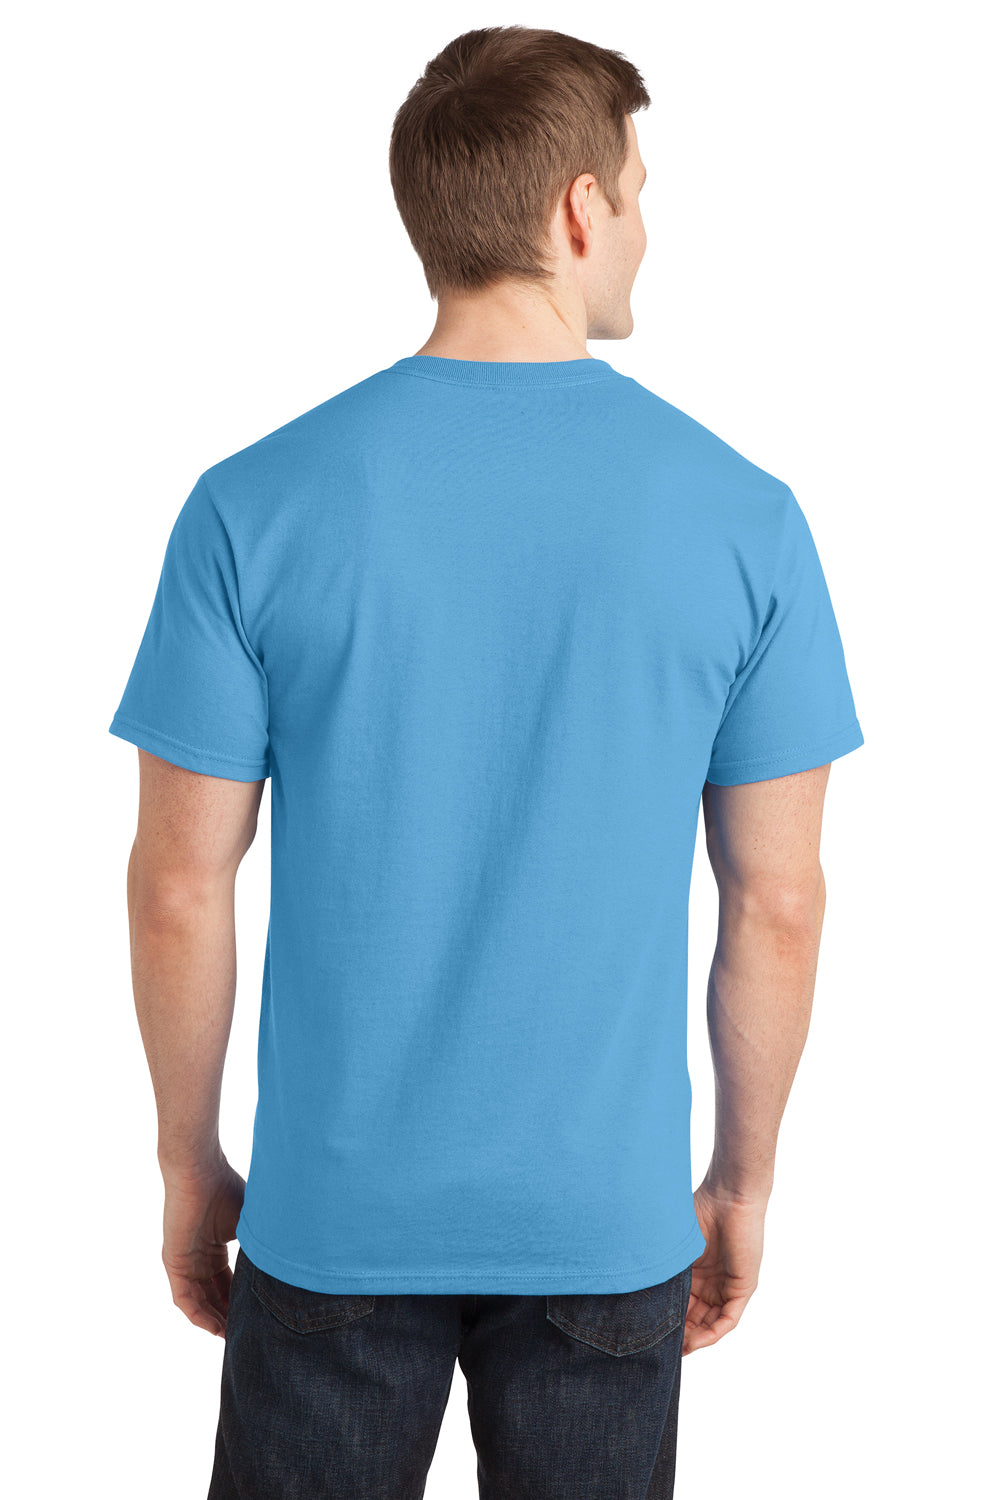 Port & Company PC150 Mens Short Sleeve Crewneck T-Shirt Aqua Blue Back